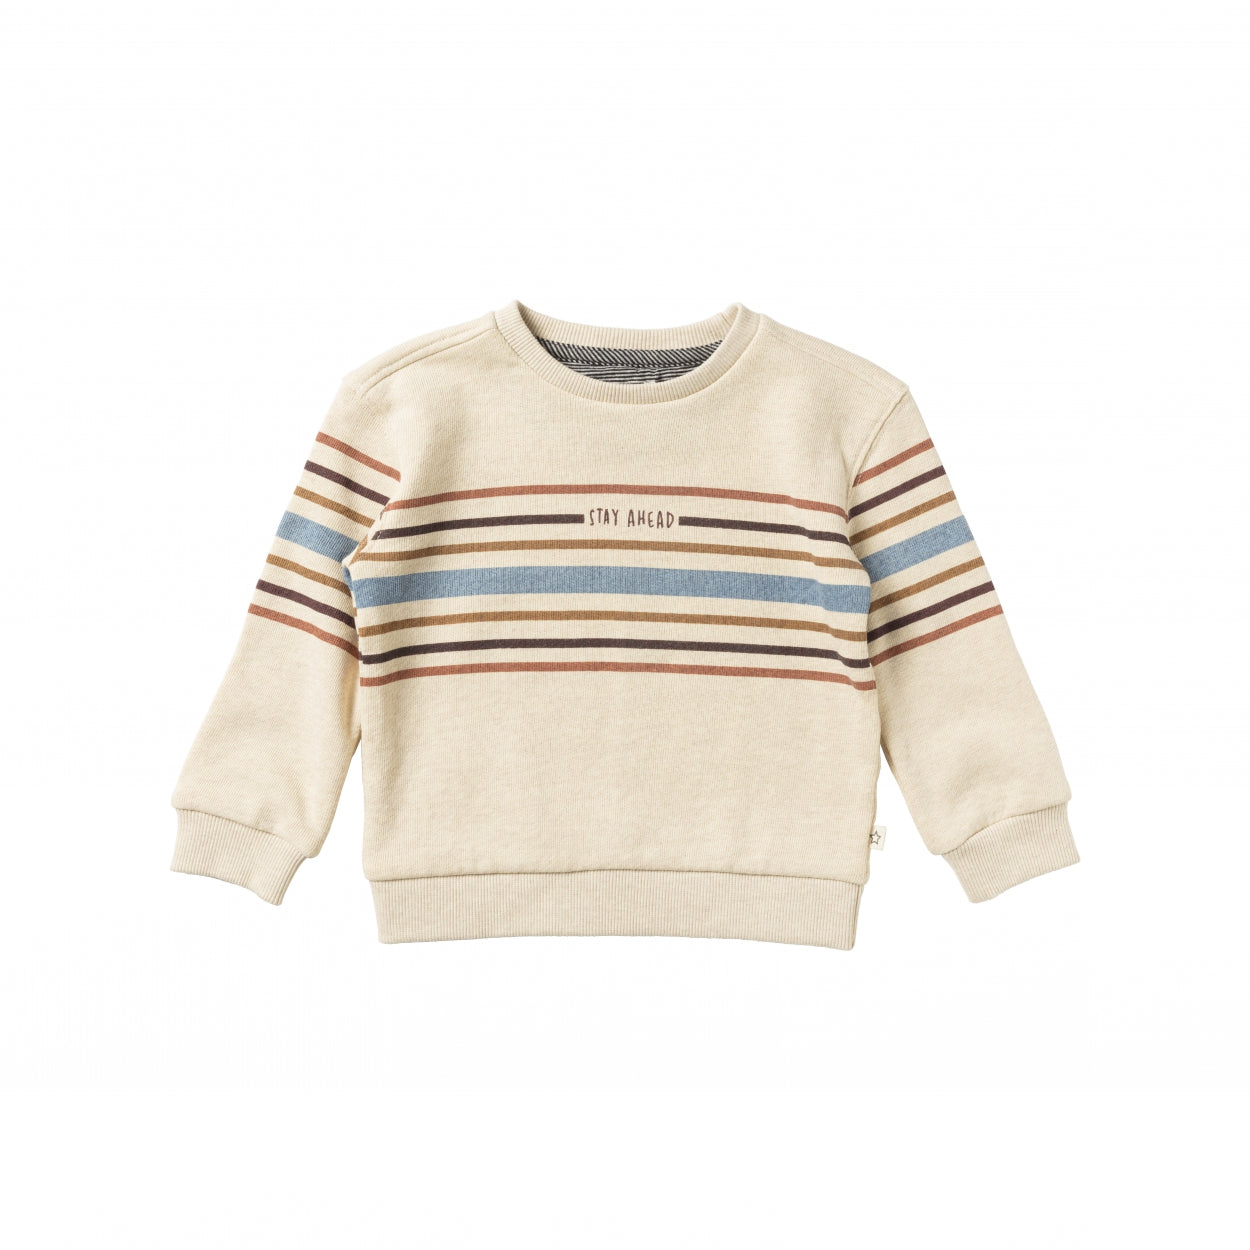 Jongens Sweater Melange | Marco van Your Wishes in de kleur Multicolor in maat 122-128.